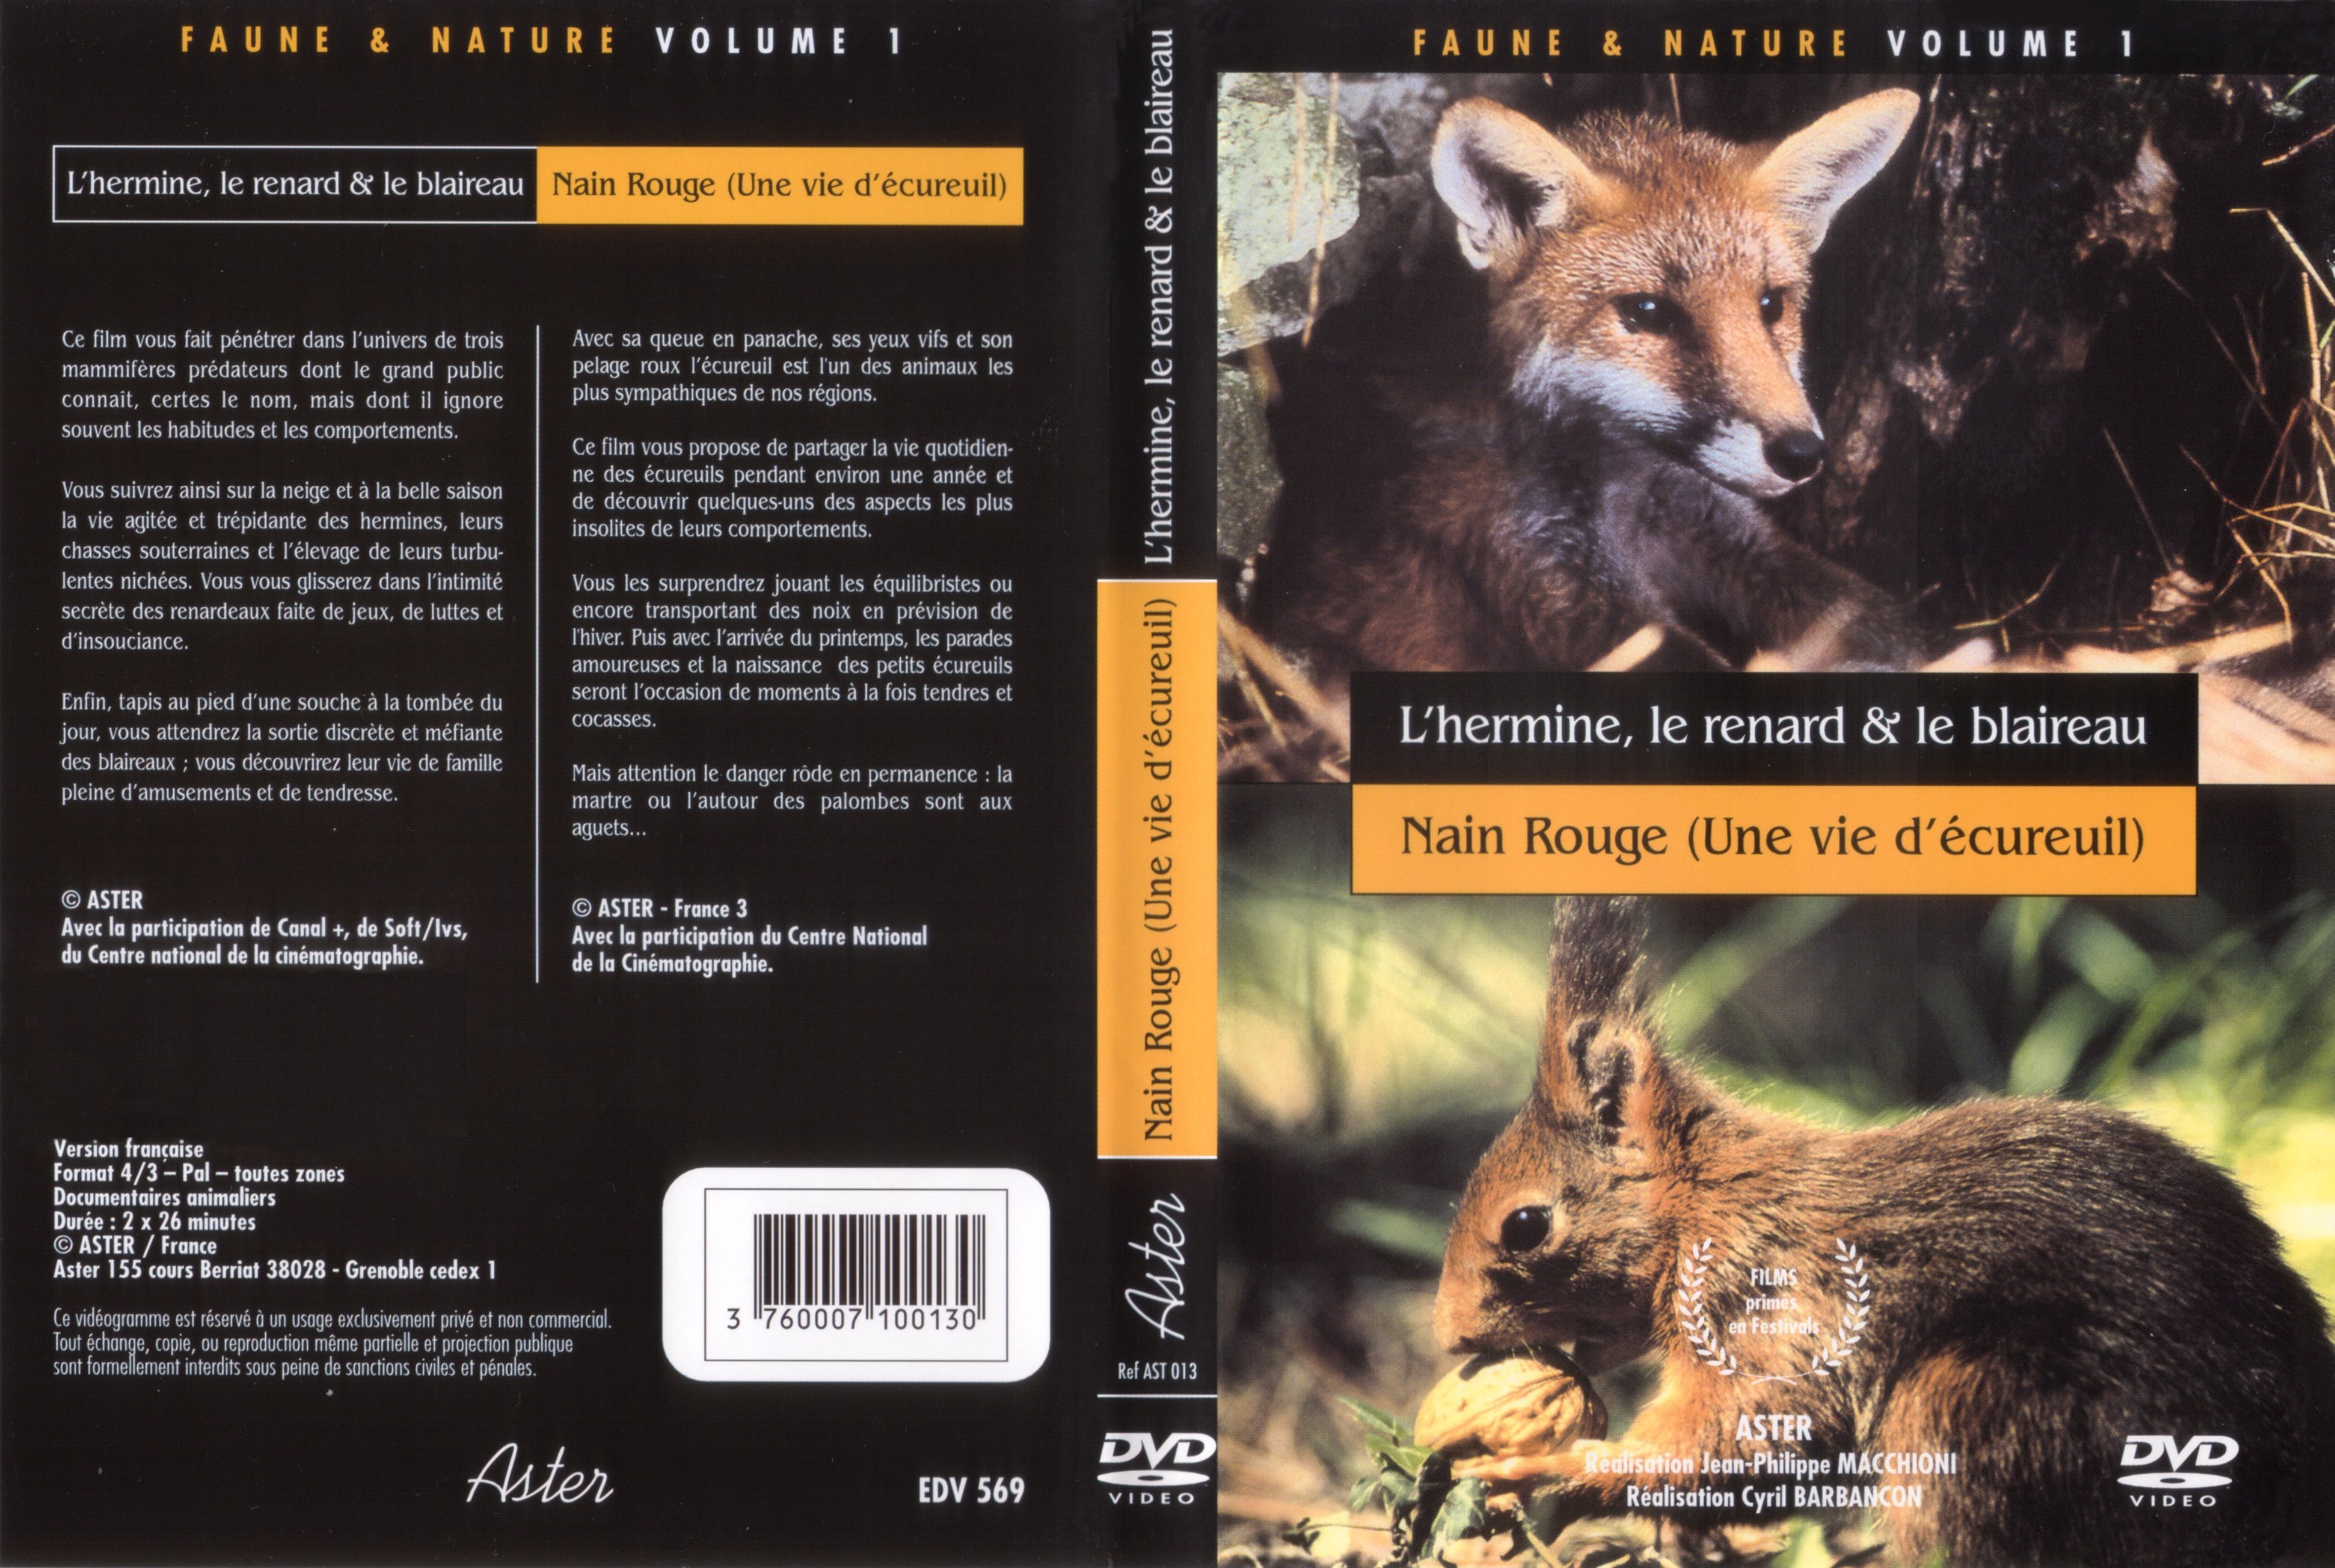 Jaquette DVD Faune et Nature vol 01